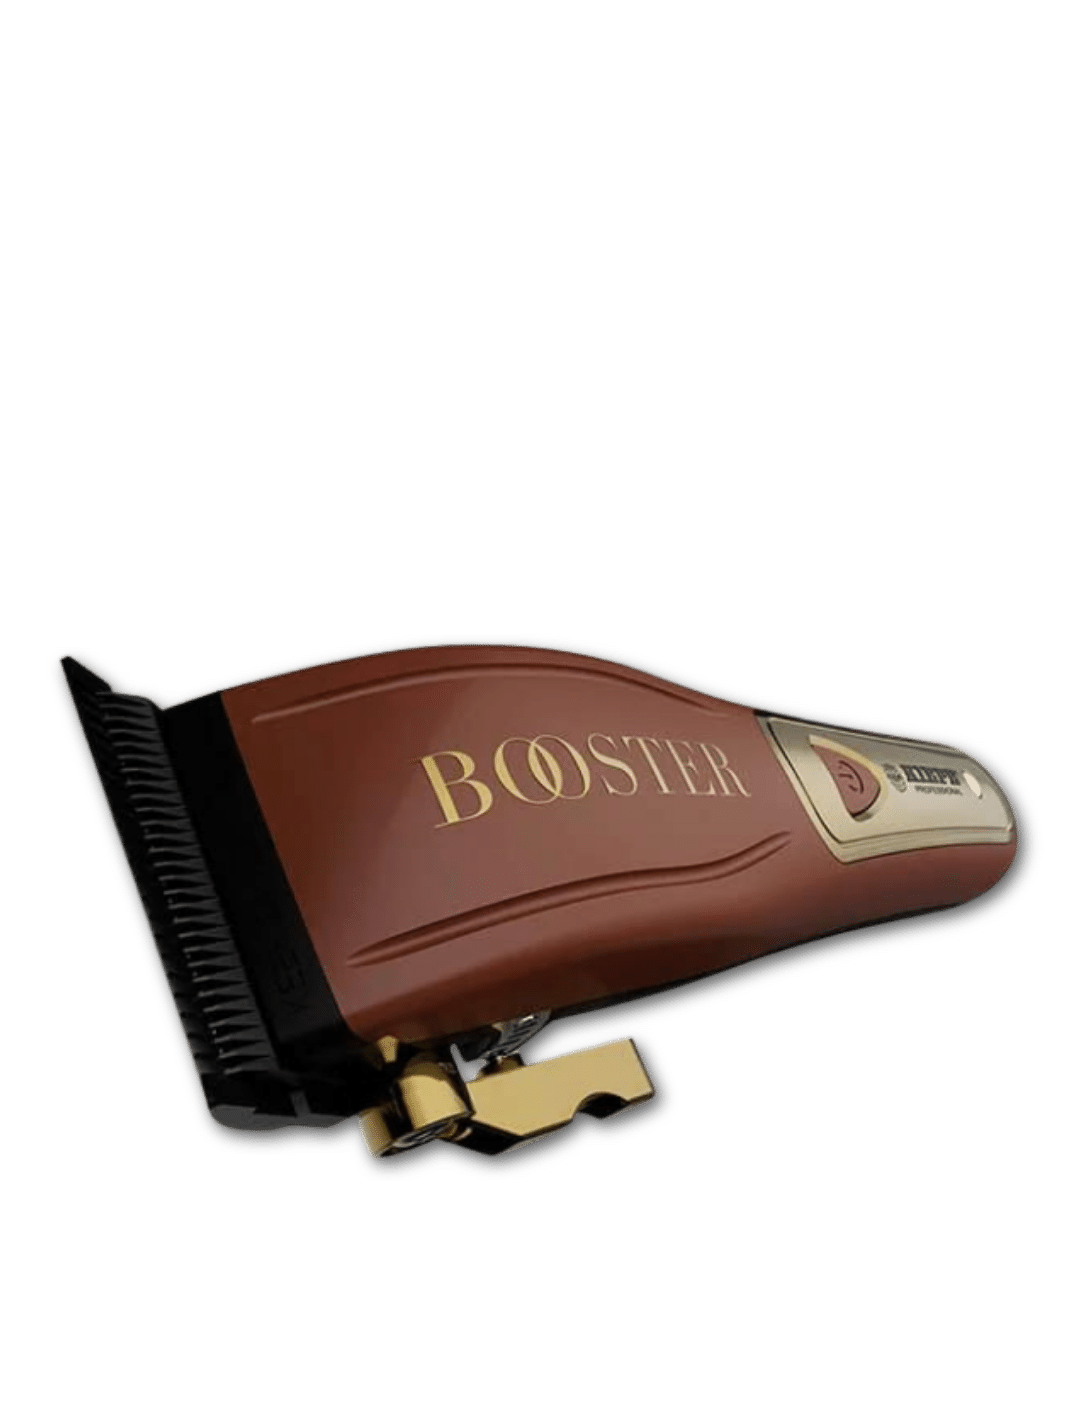  Kiepe Clipper Booster schnurlos, verfügbar bei Phullcutz, bietet professionelle Schnittpräzision mit flexibler Schnurlos-Option und fortschrittlicher Kühltechnologie für Barbiere und Stylisten.